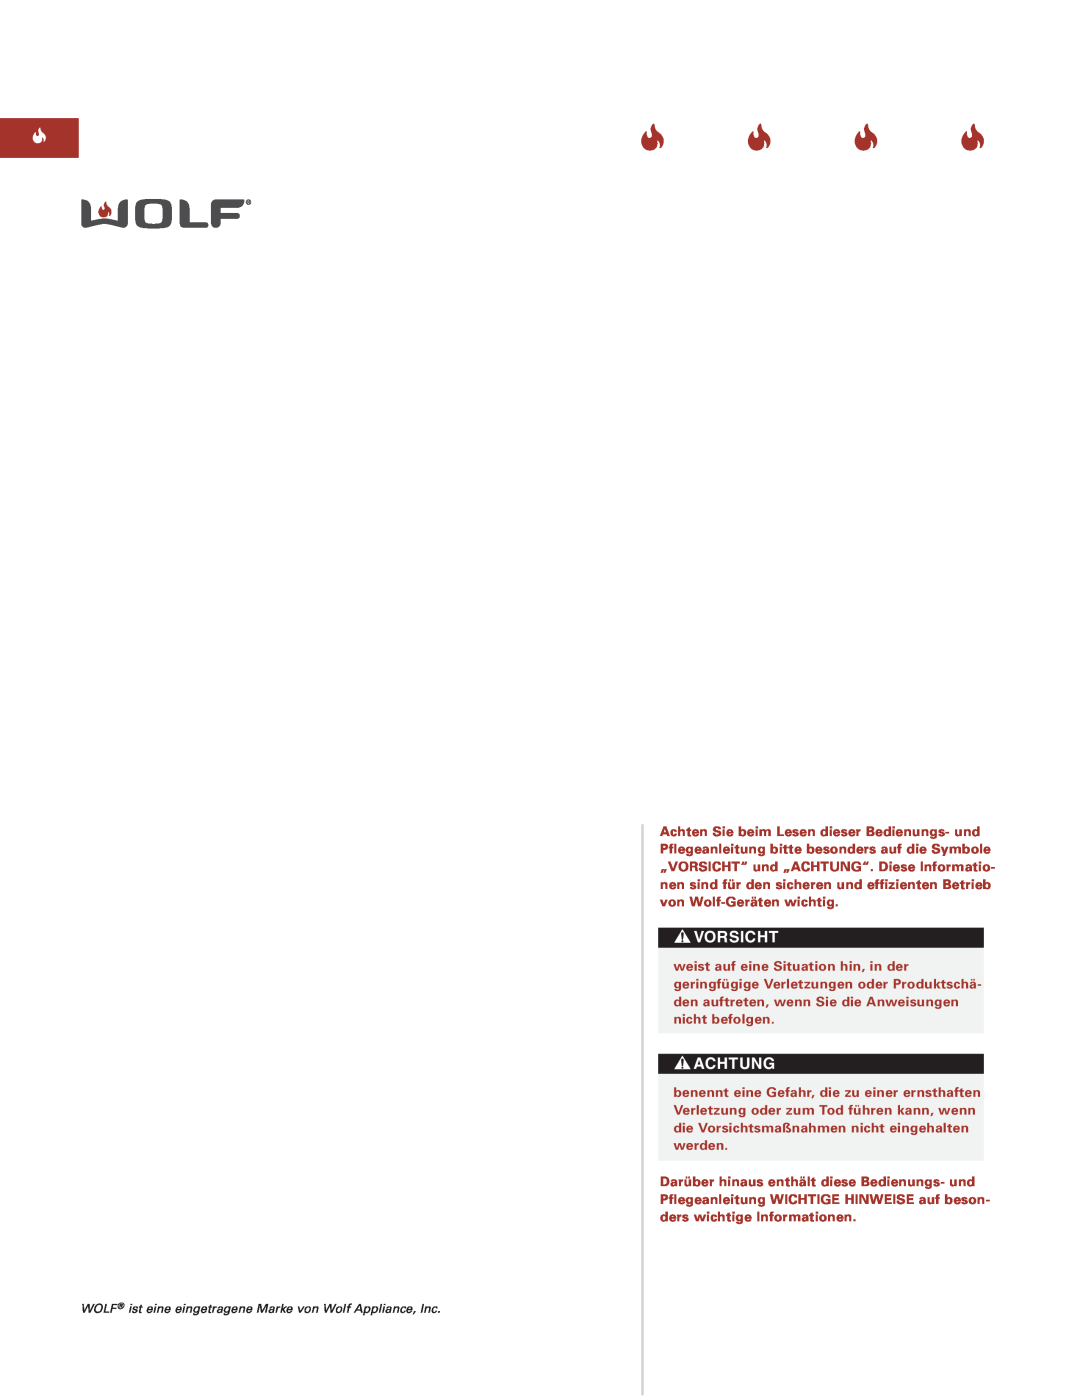 Sub-Zero Downdraft Ventilation manual Vorsicht, Achtung, WOLF ist eine eingetragene Marke von Wolf Appliance, Inc 